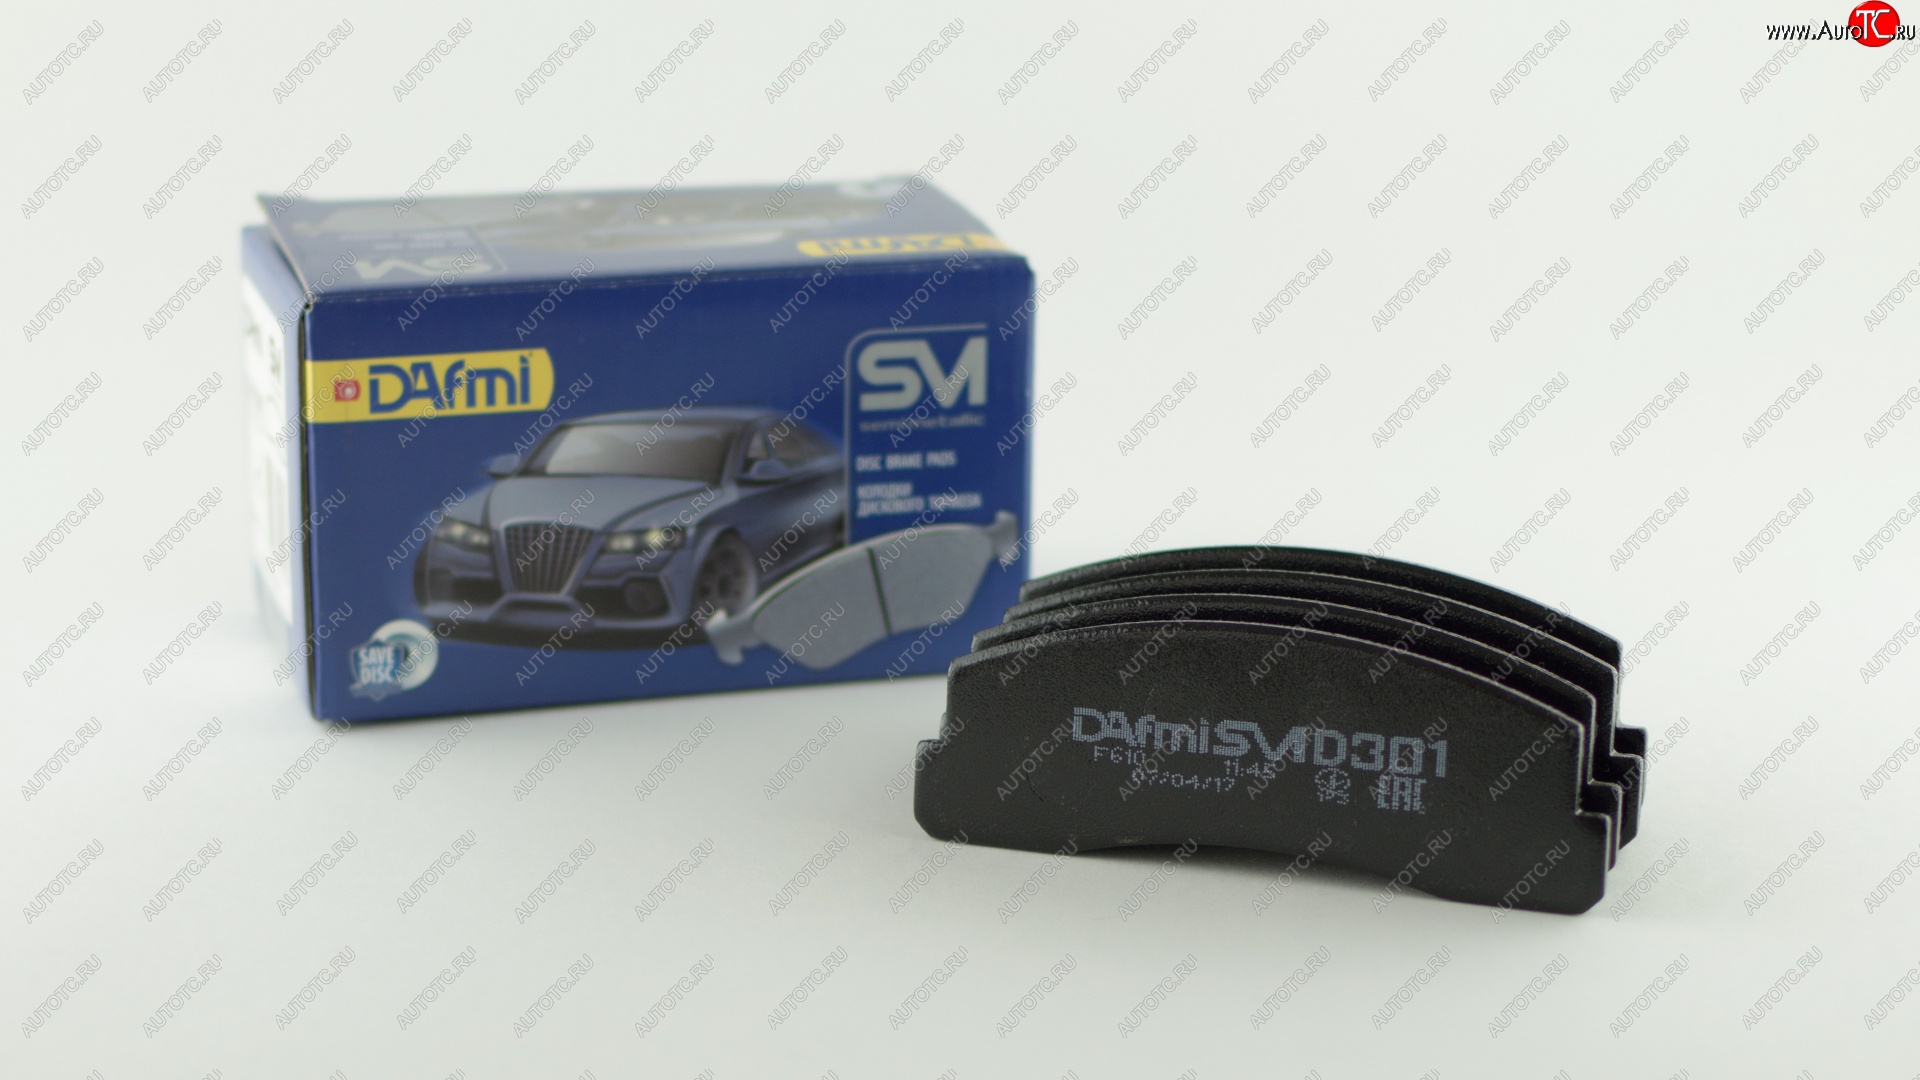 659 р. Колодка переднего дискового тормоза DAFMI (SM) Chevrolet Niva 2123 дорестайлинг (2002-2008)